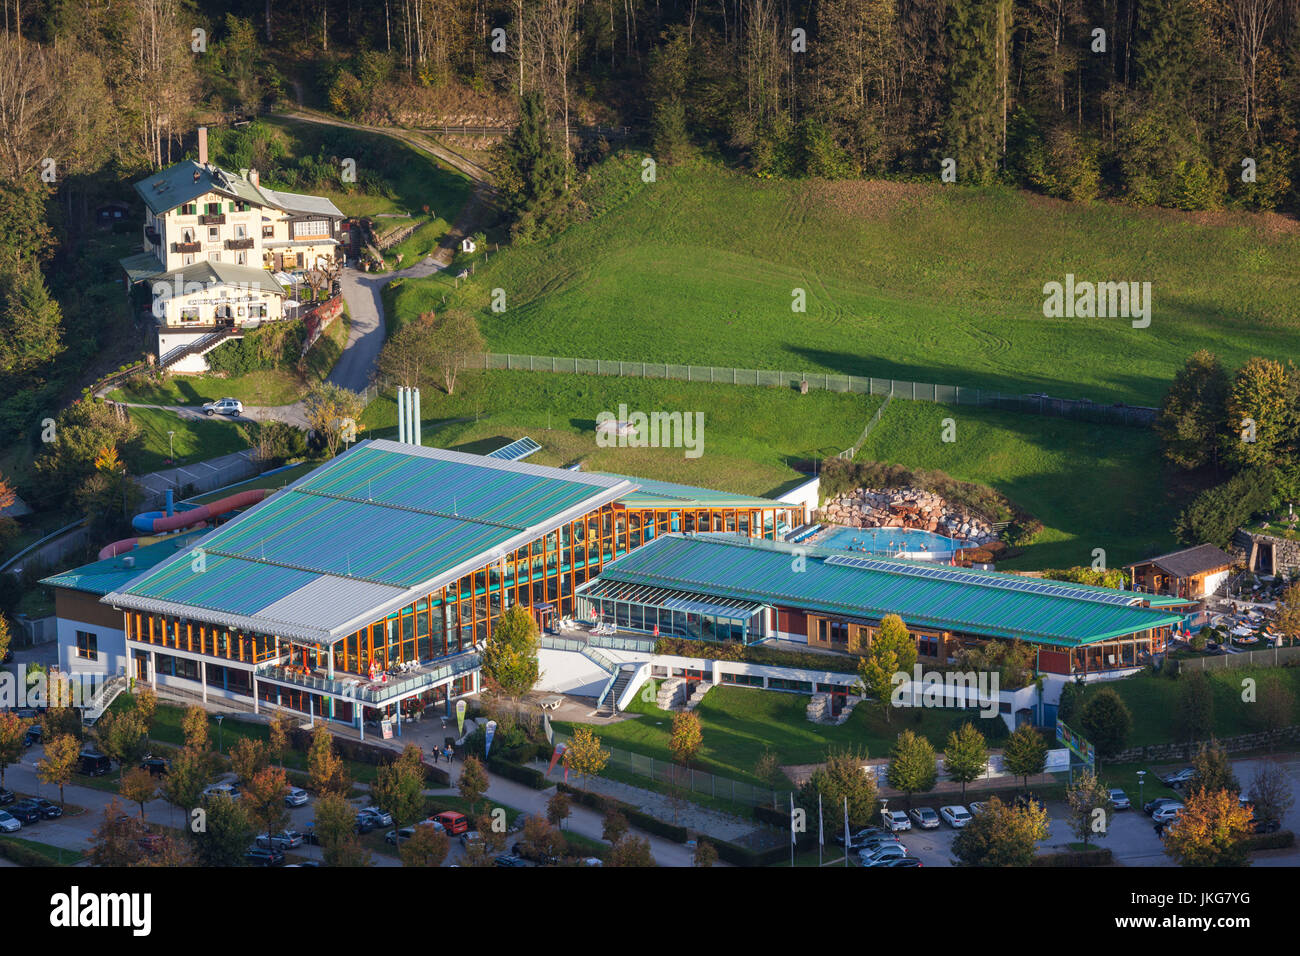 Germany, Bavaria, Berchtesgaden, augmentation de la vue sur le parc aquatique Watzmann Therme Banque D'Images